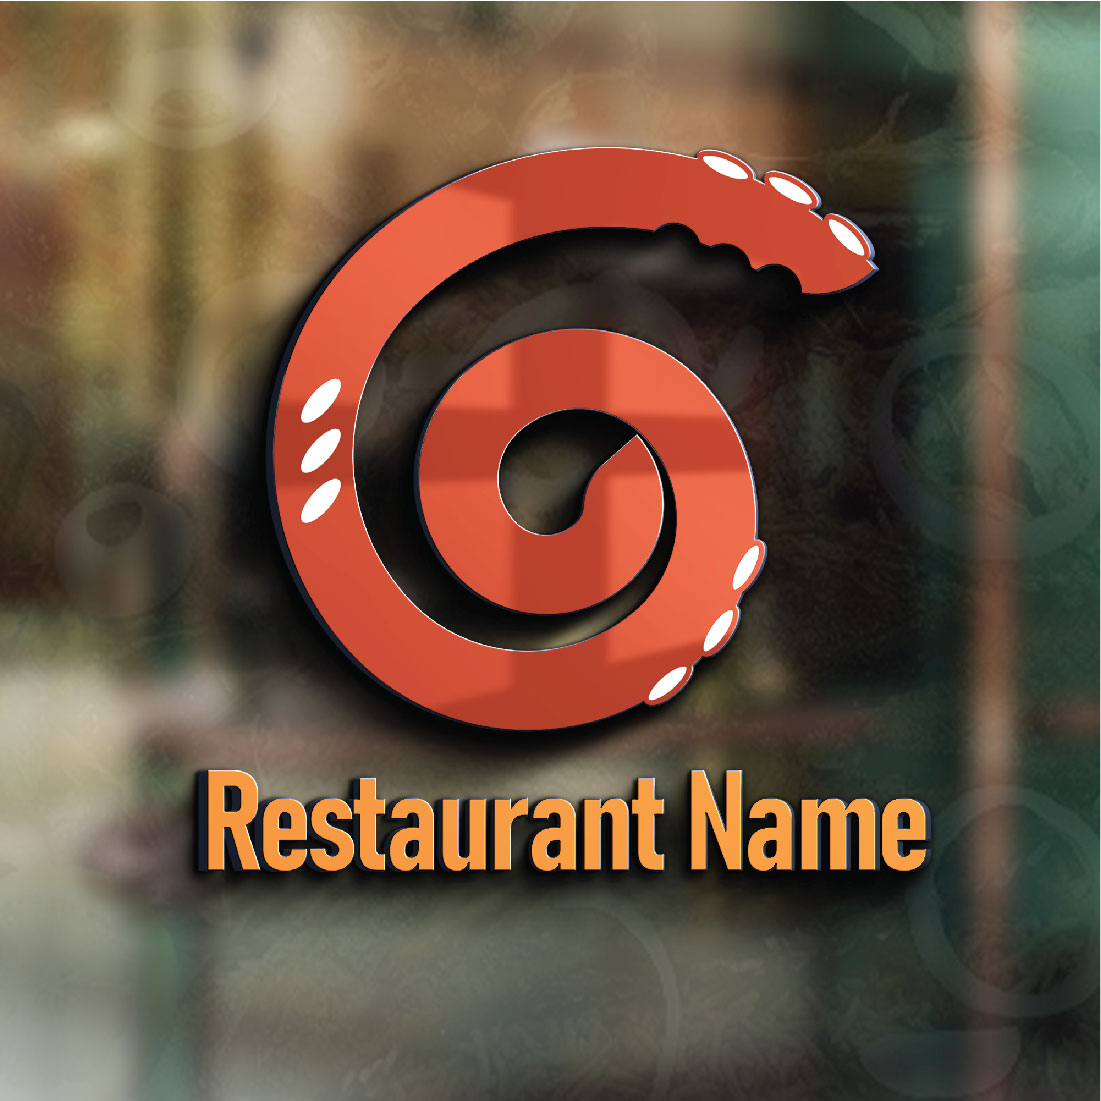 restaurant name 02 826